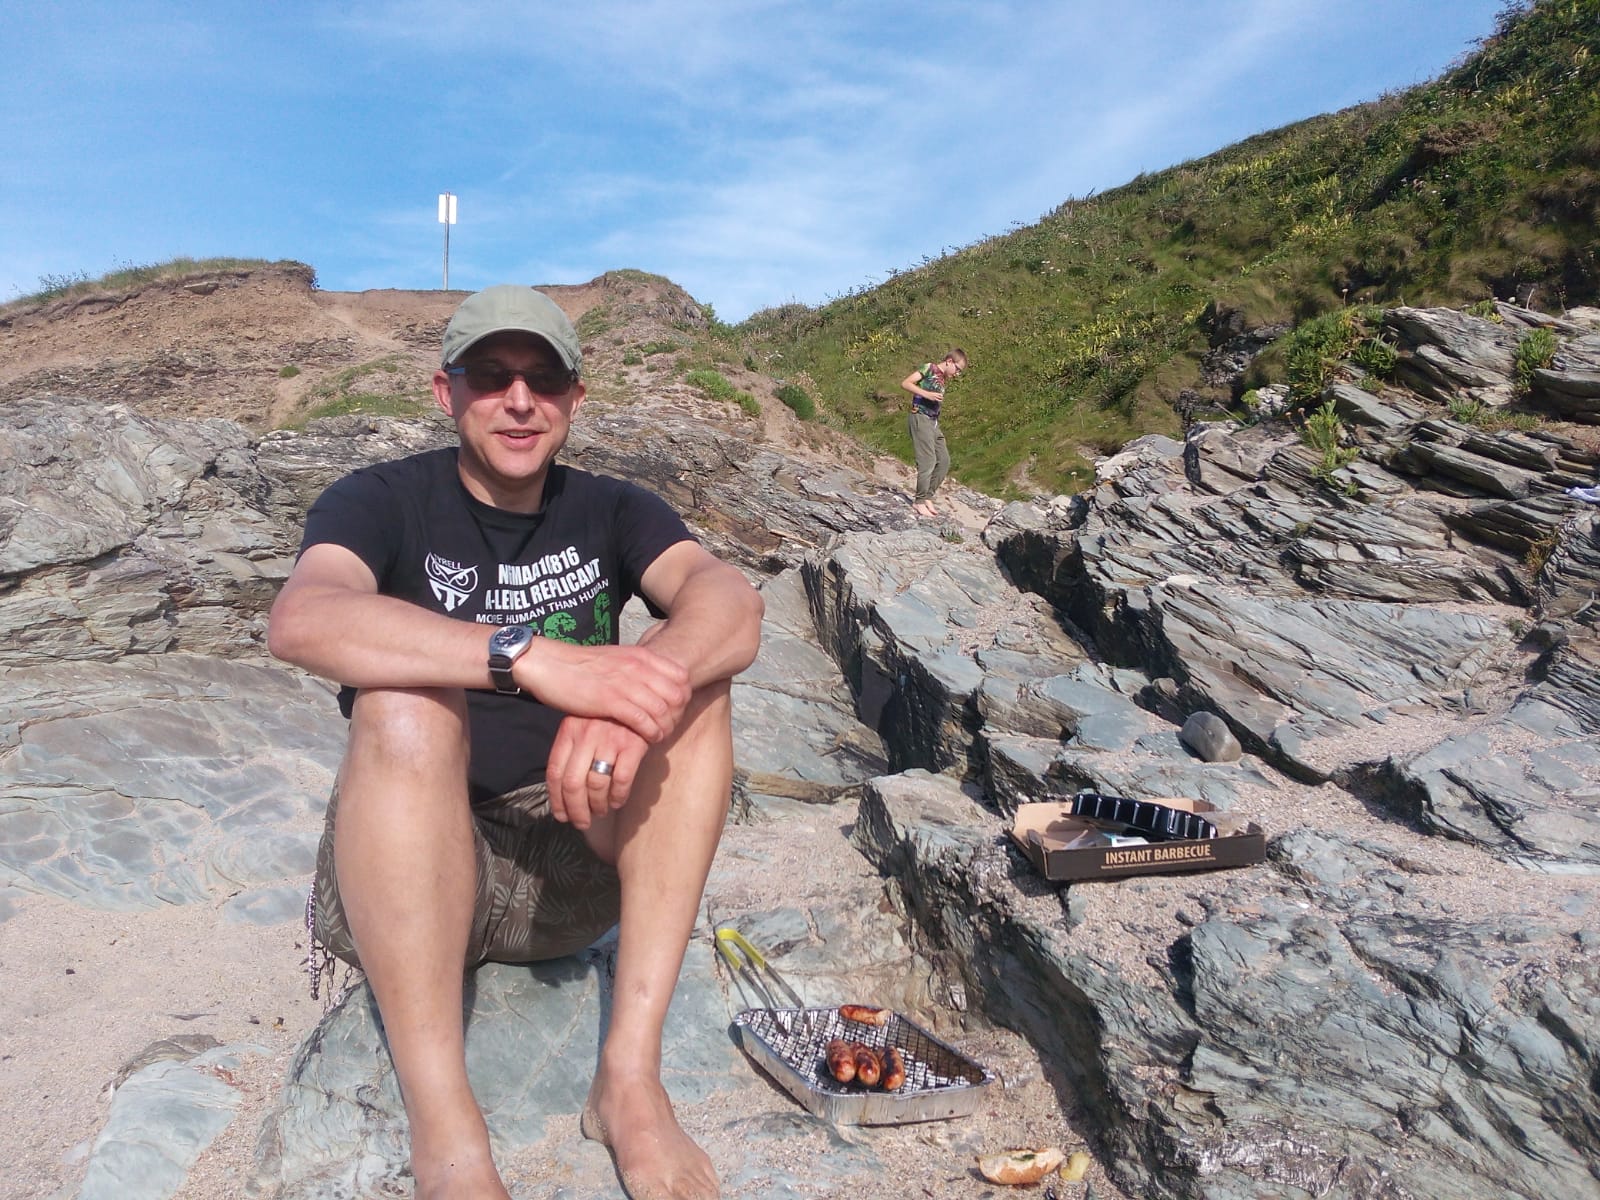 NCW's Mark enjoys some sunshine on the Cornish Coast